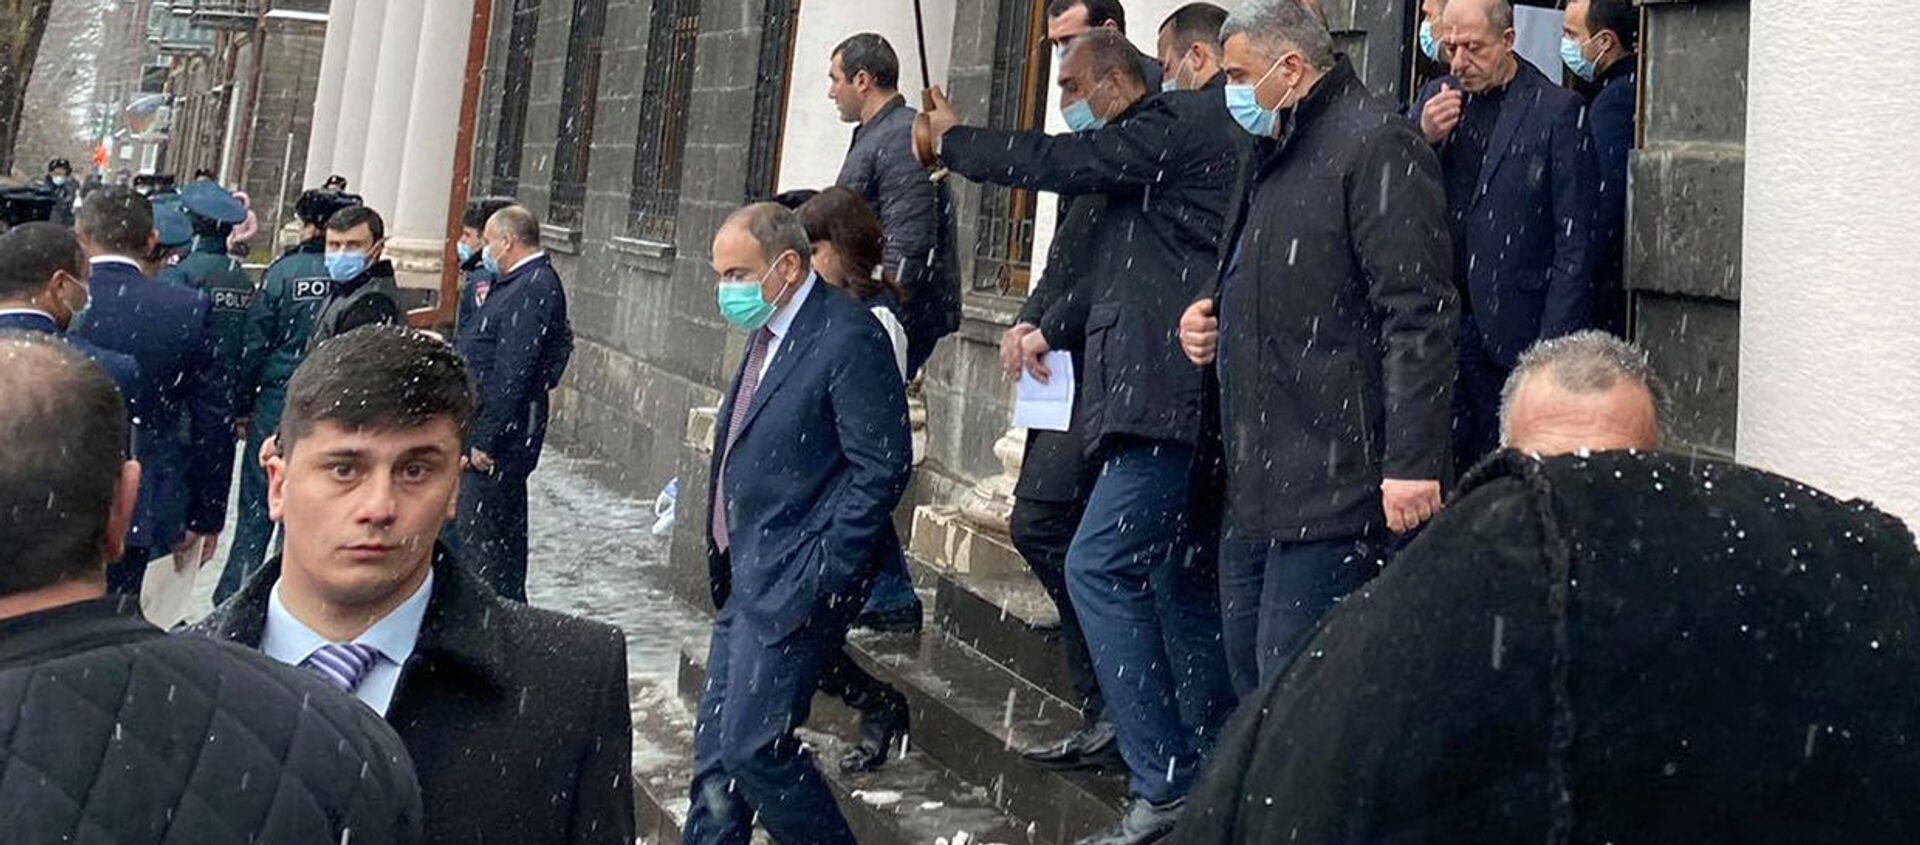 Премьер-министр Никол Пашинян покидает здание администрации Ширакской области после совещания (17 февраля 2021). Гюмри - Sputnik Արմենիա, 1920, 17.02.2021